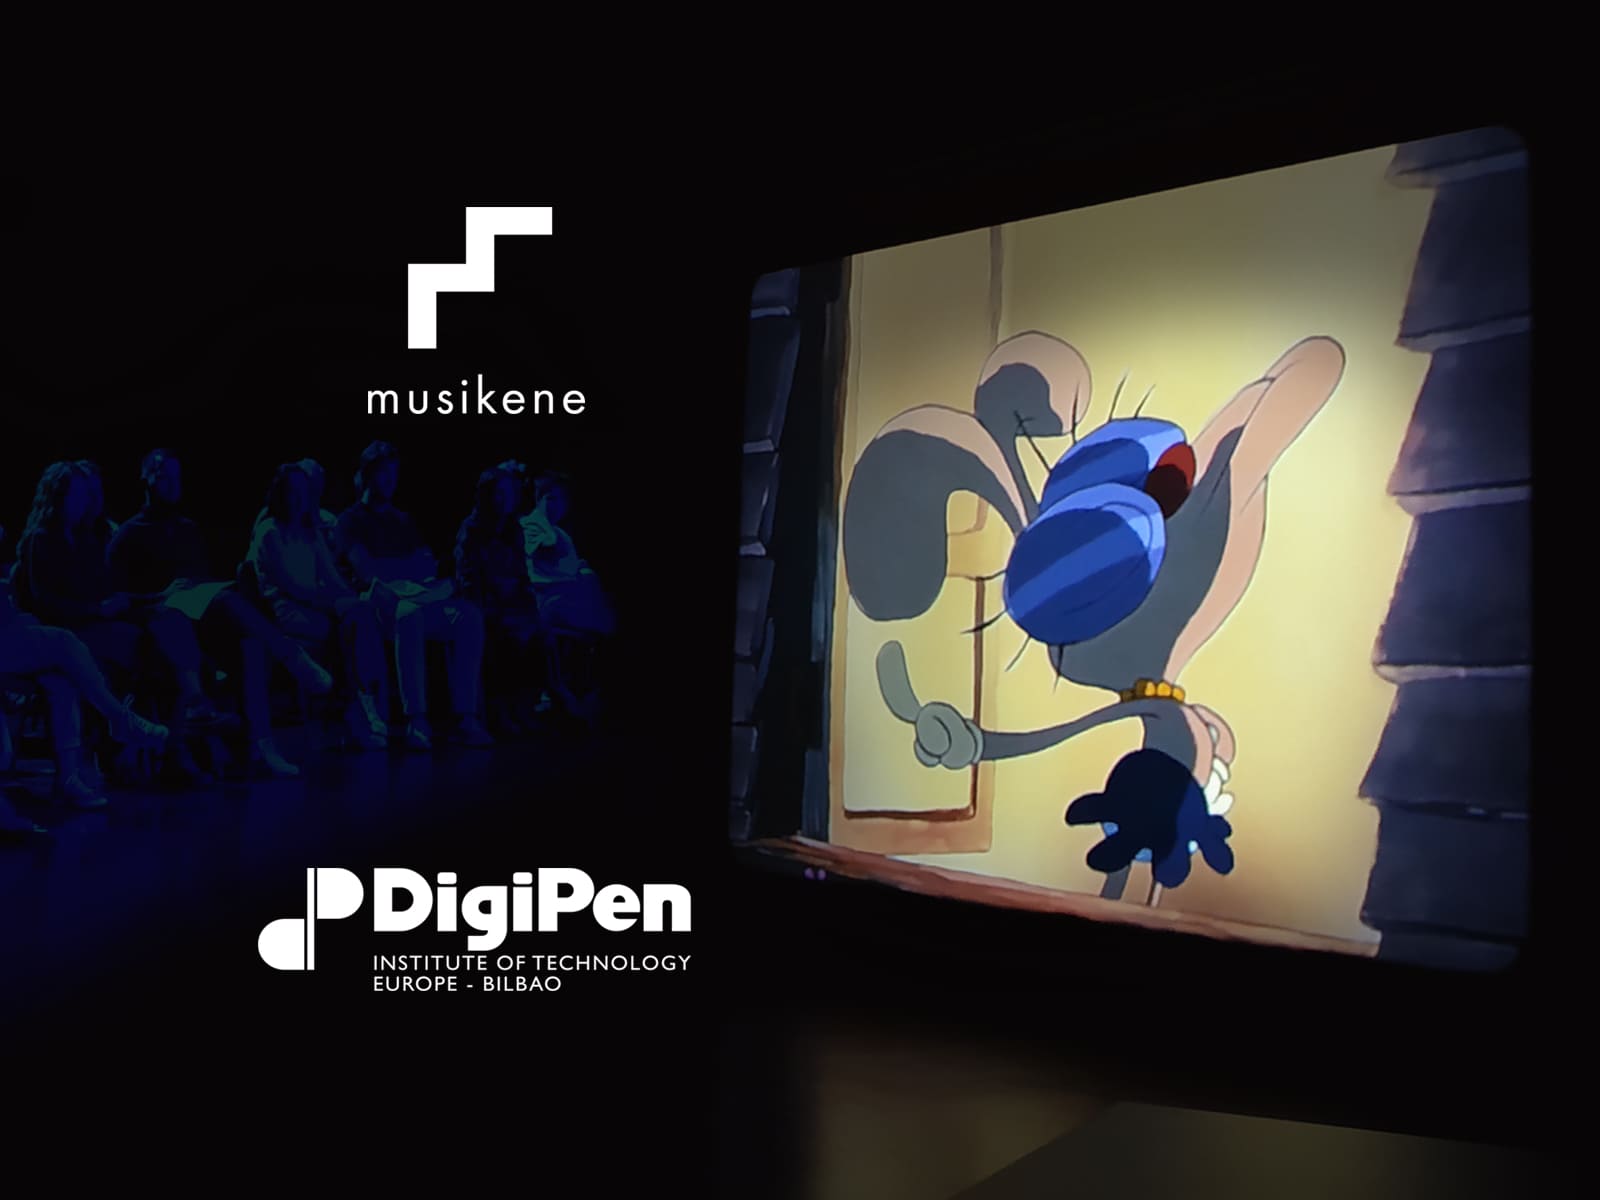 Una captura de un personaje en una caricatura animada con los logotipos de DigiPen y Musikene ubicados a su lado izquierdo.